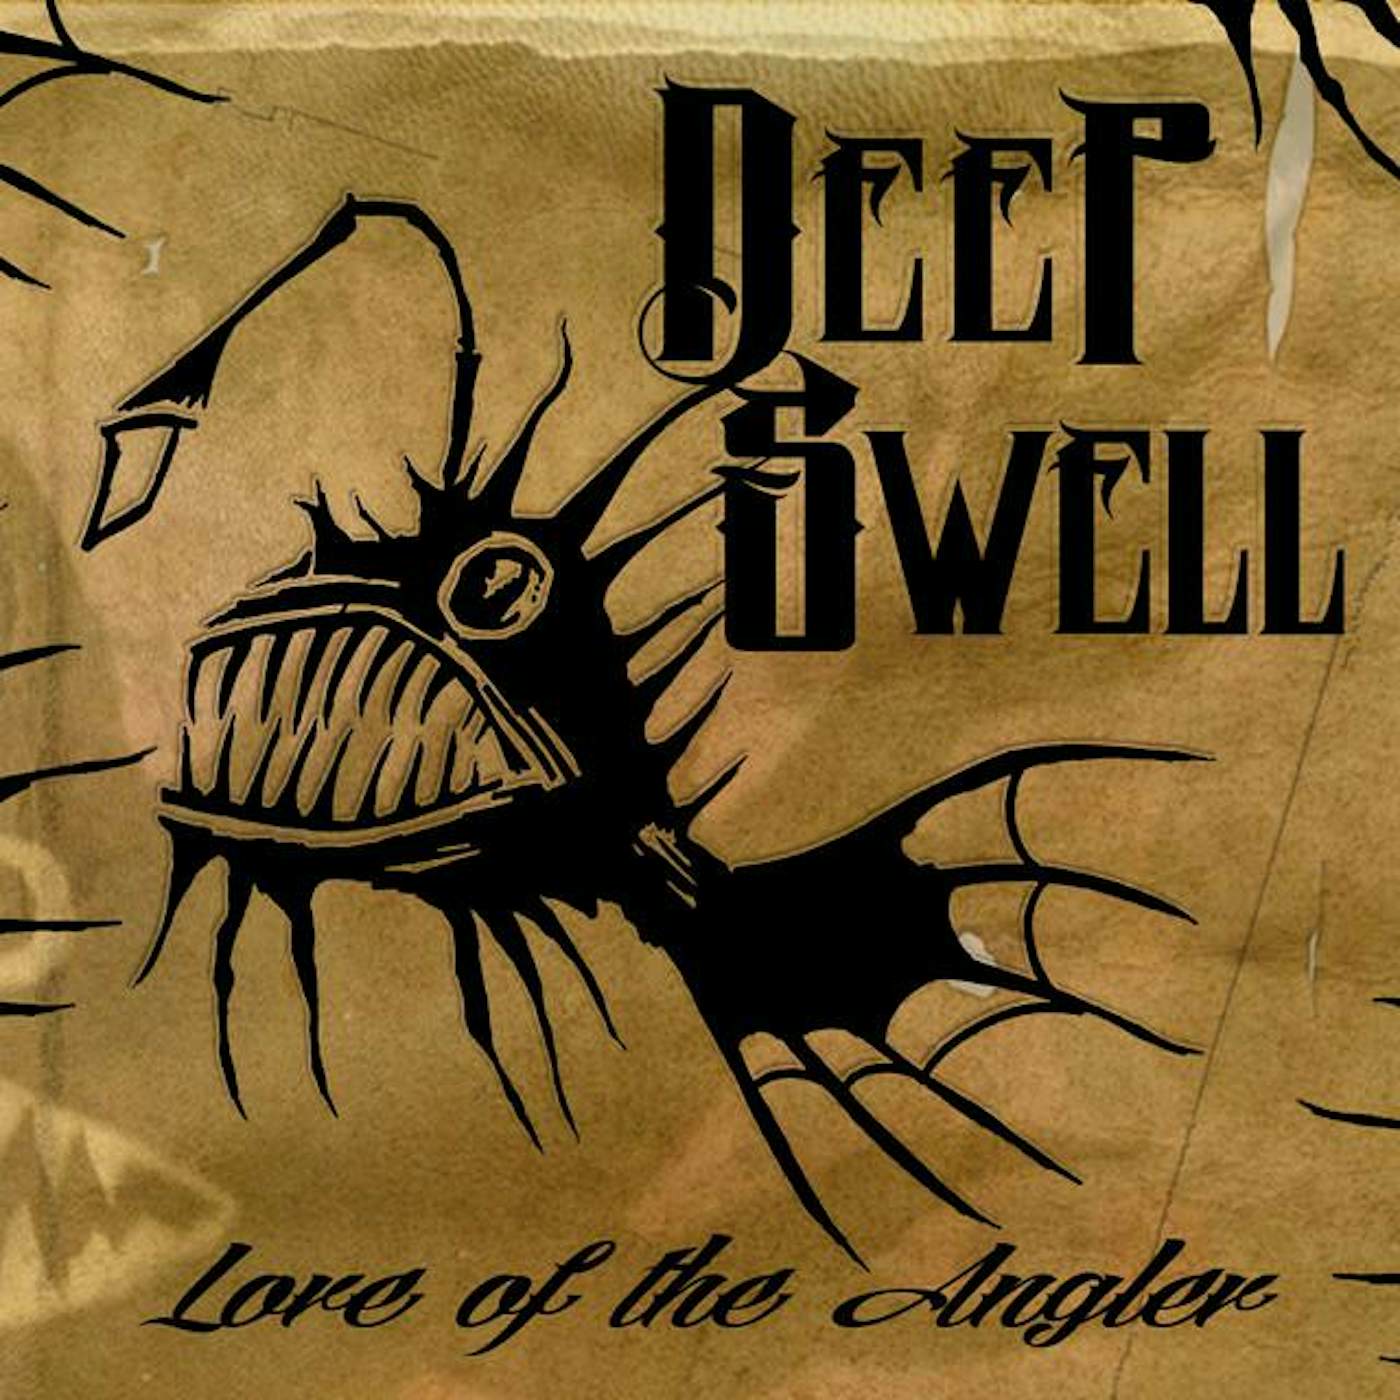 Deep Swell